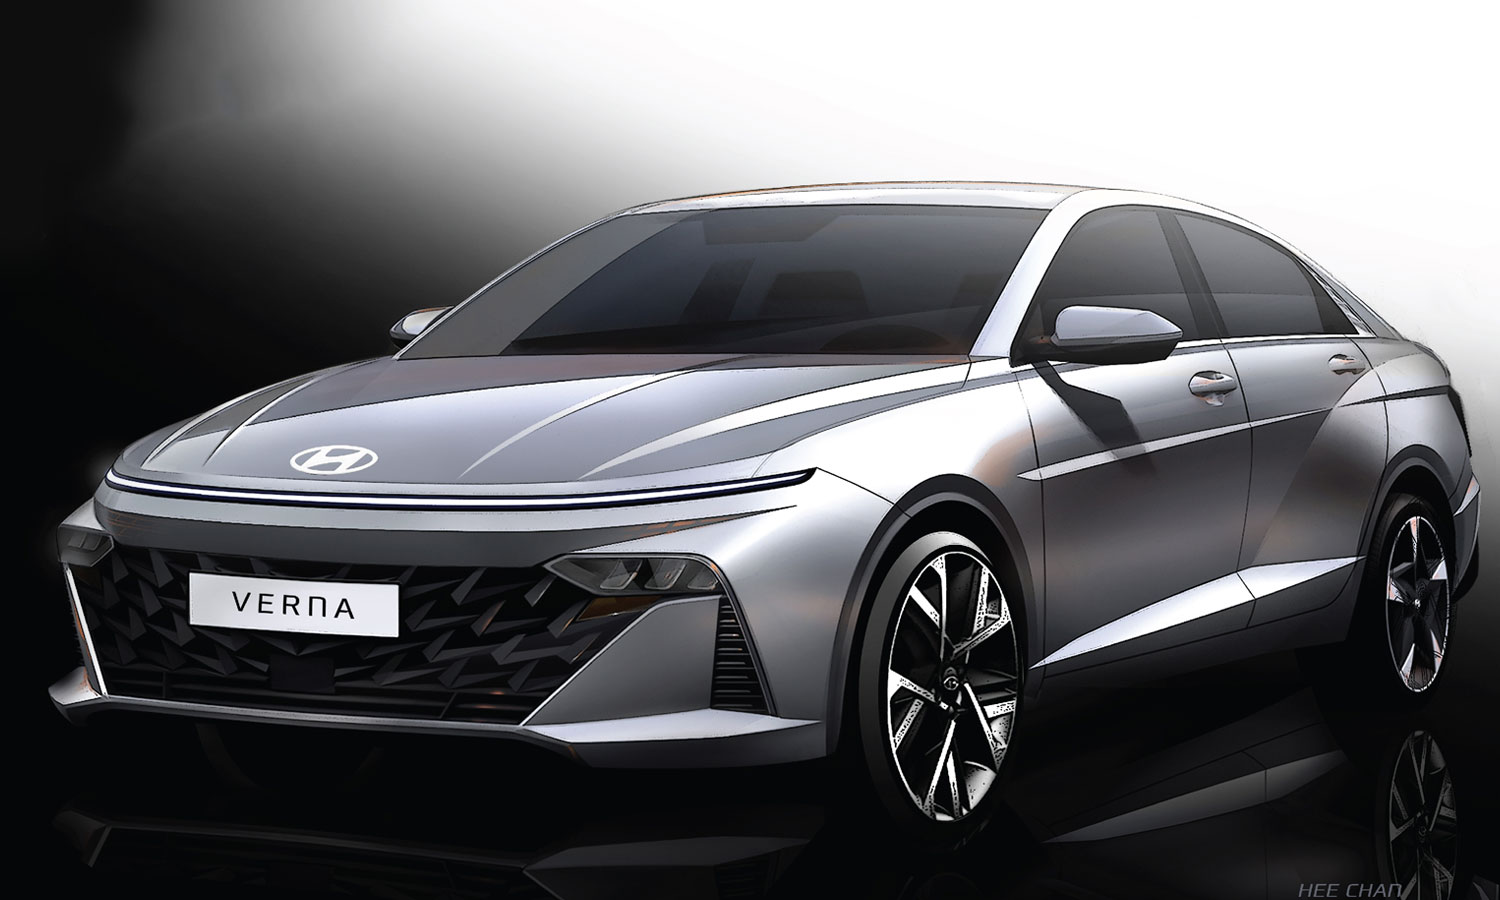 New Hyundai Verna with cool updates